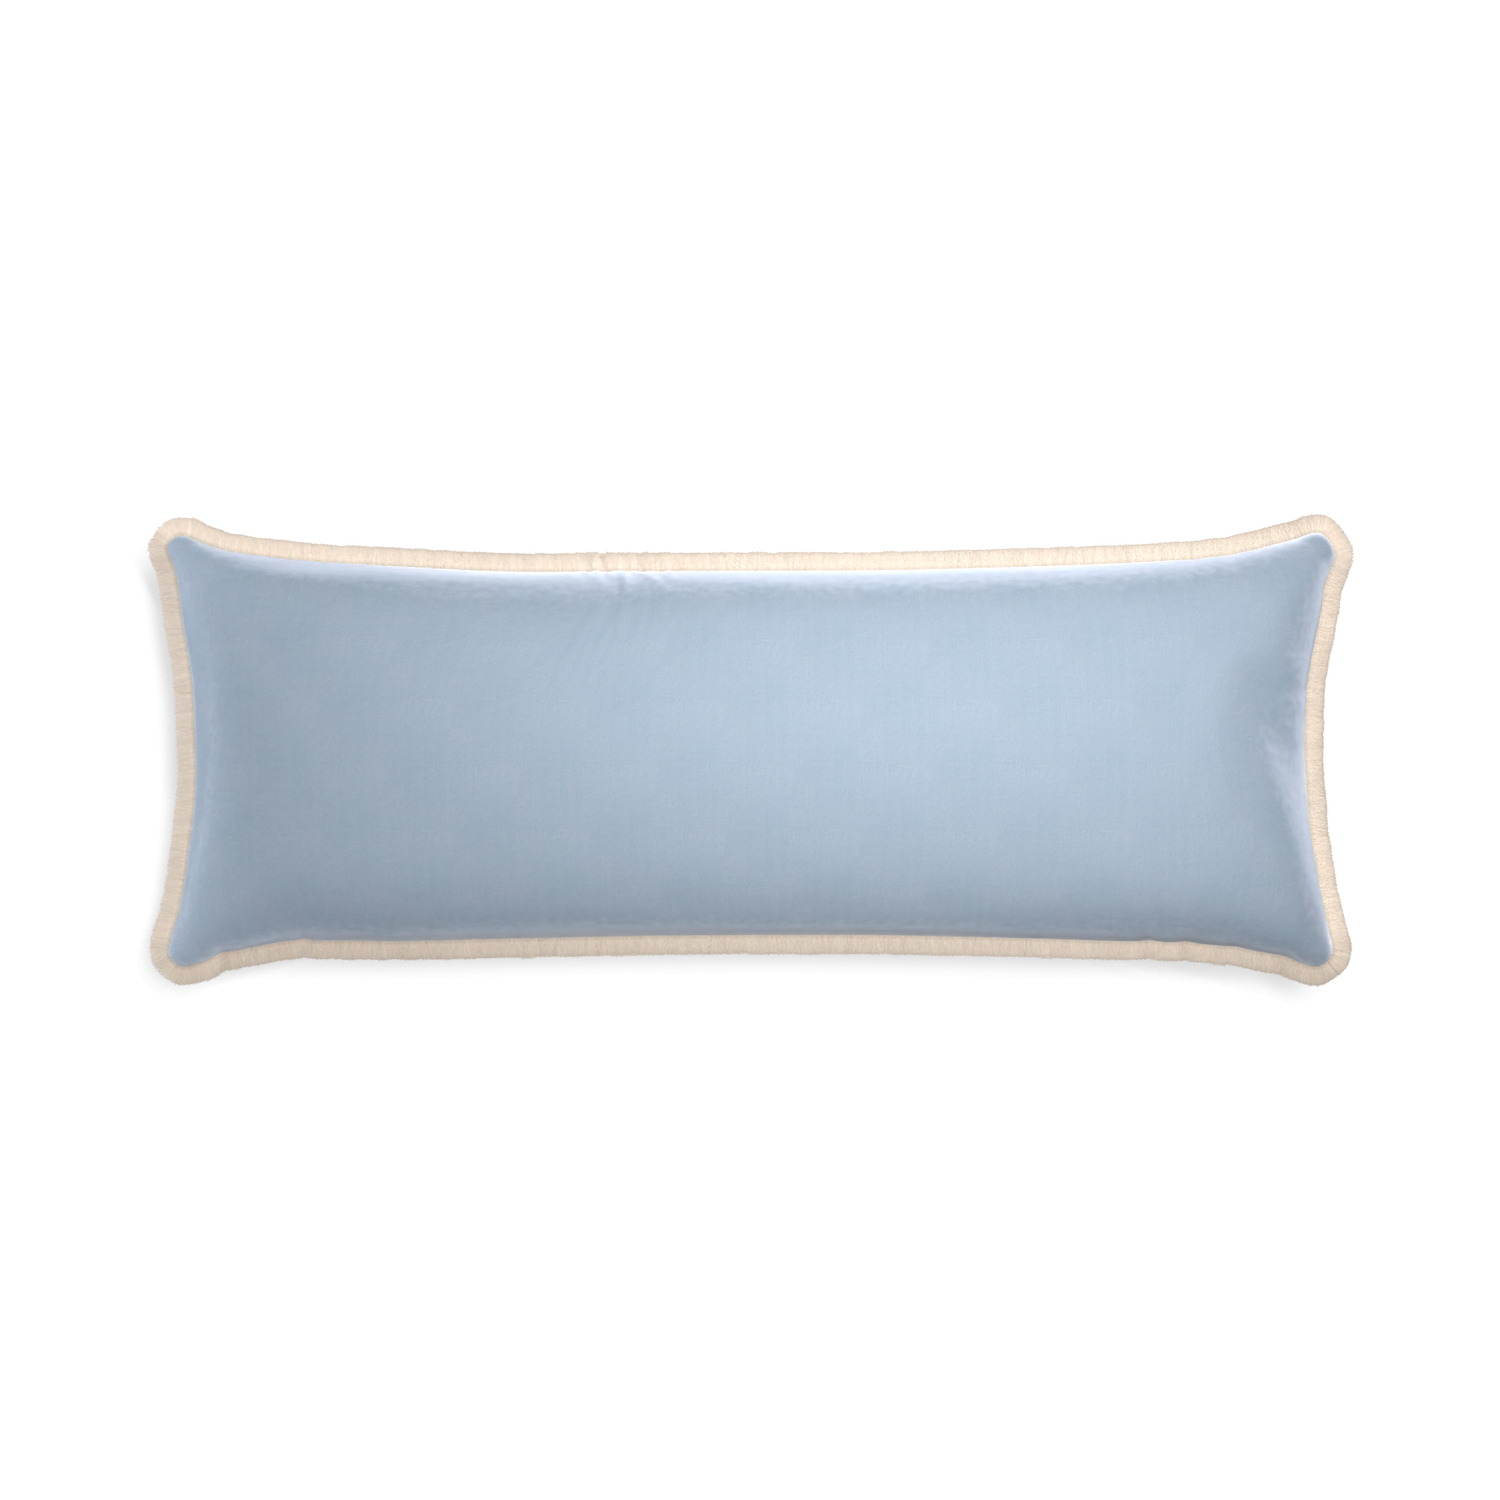 Xl-lumbar sky velvet custom pillow with cream fringe on white background